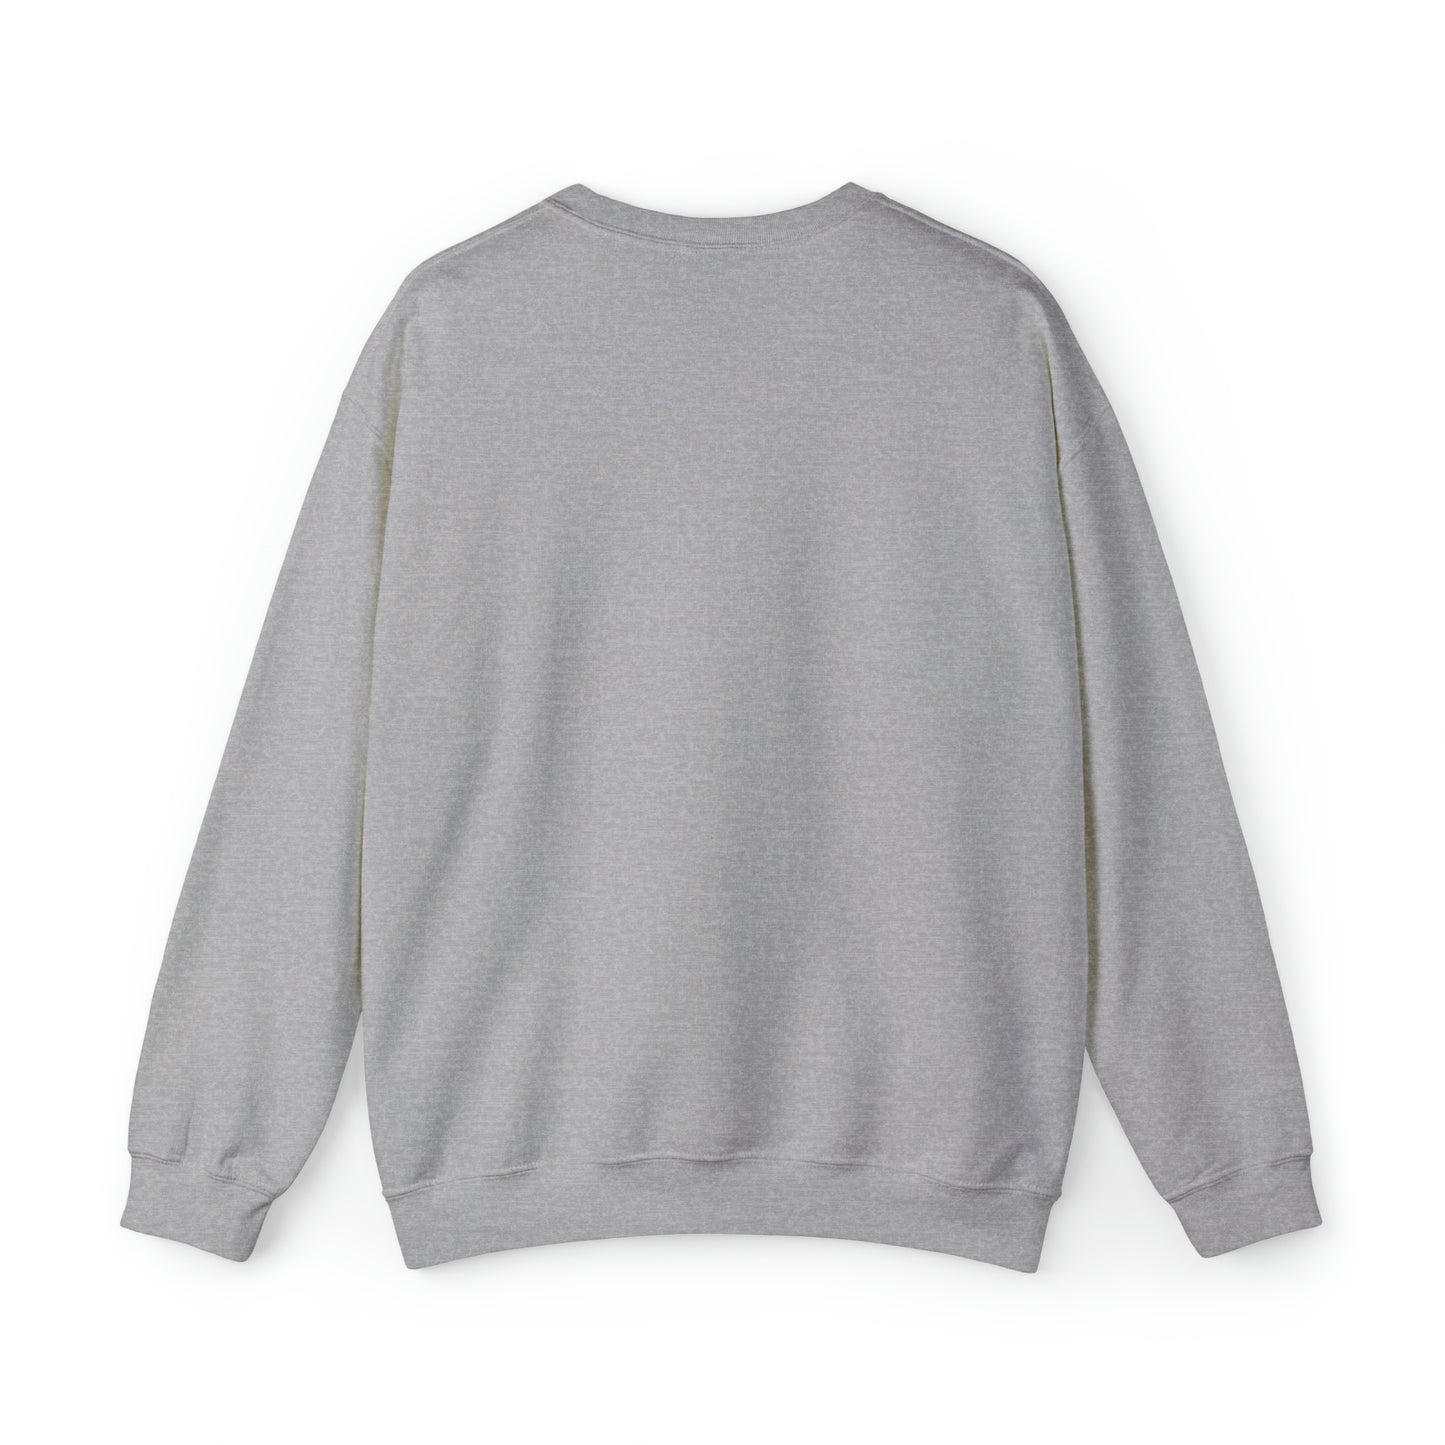 Sweatshirt:  merry quiltmas crewneck sweatshirt